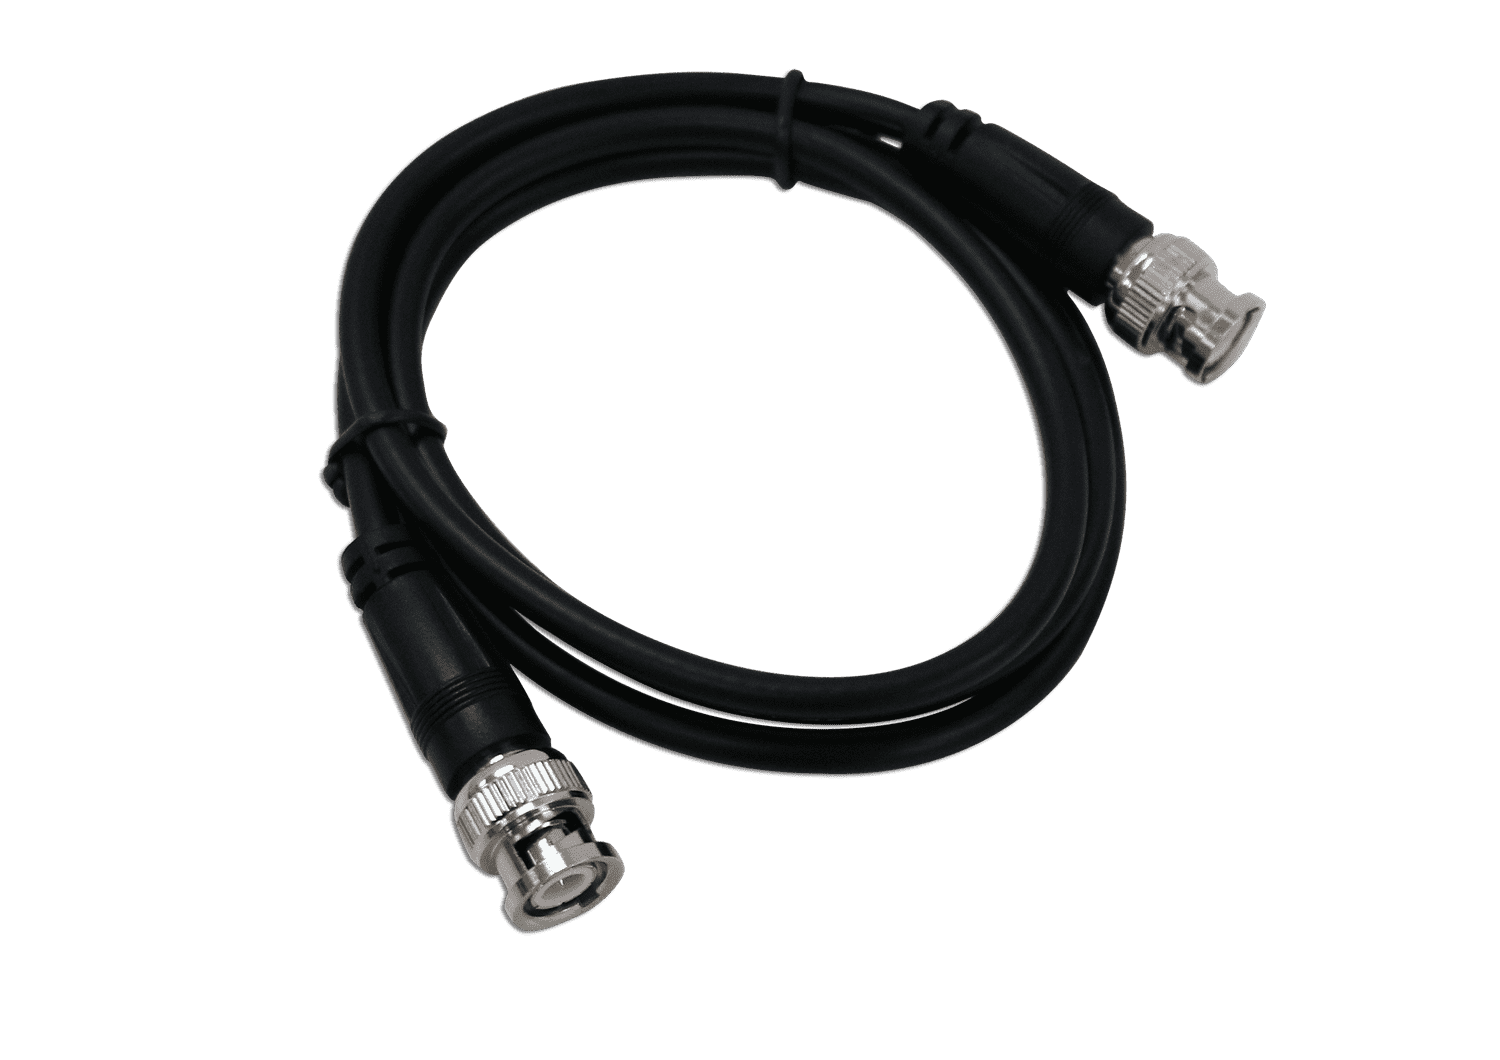 2x BNC Cables